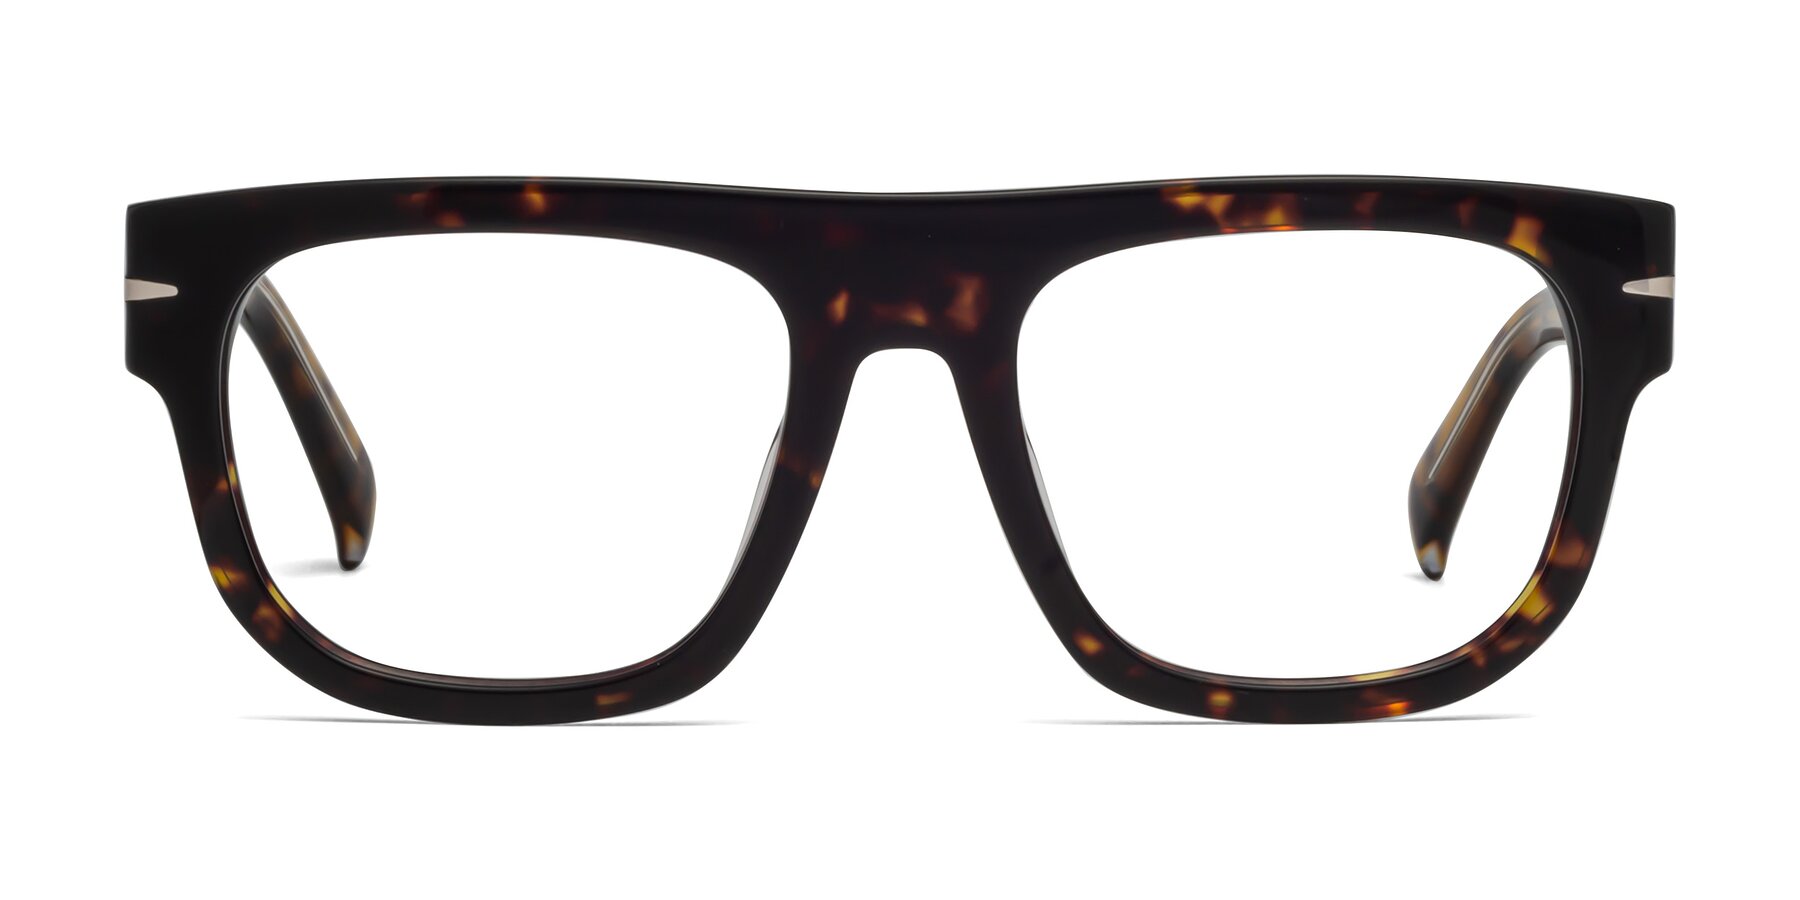 Campbell - Tortoise Sunglasses Frame